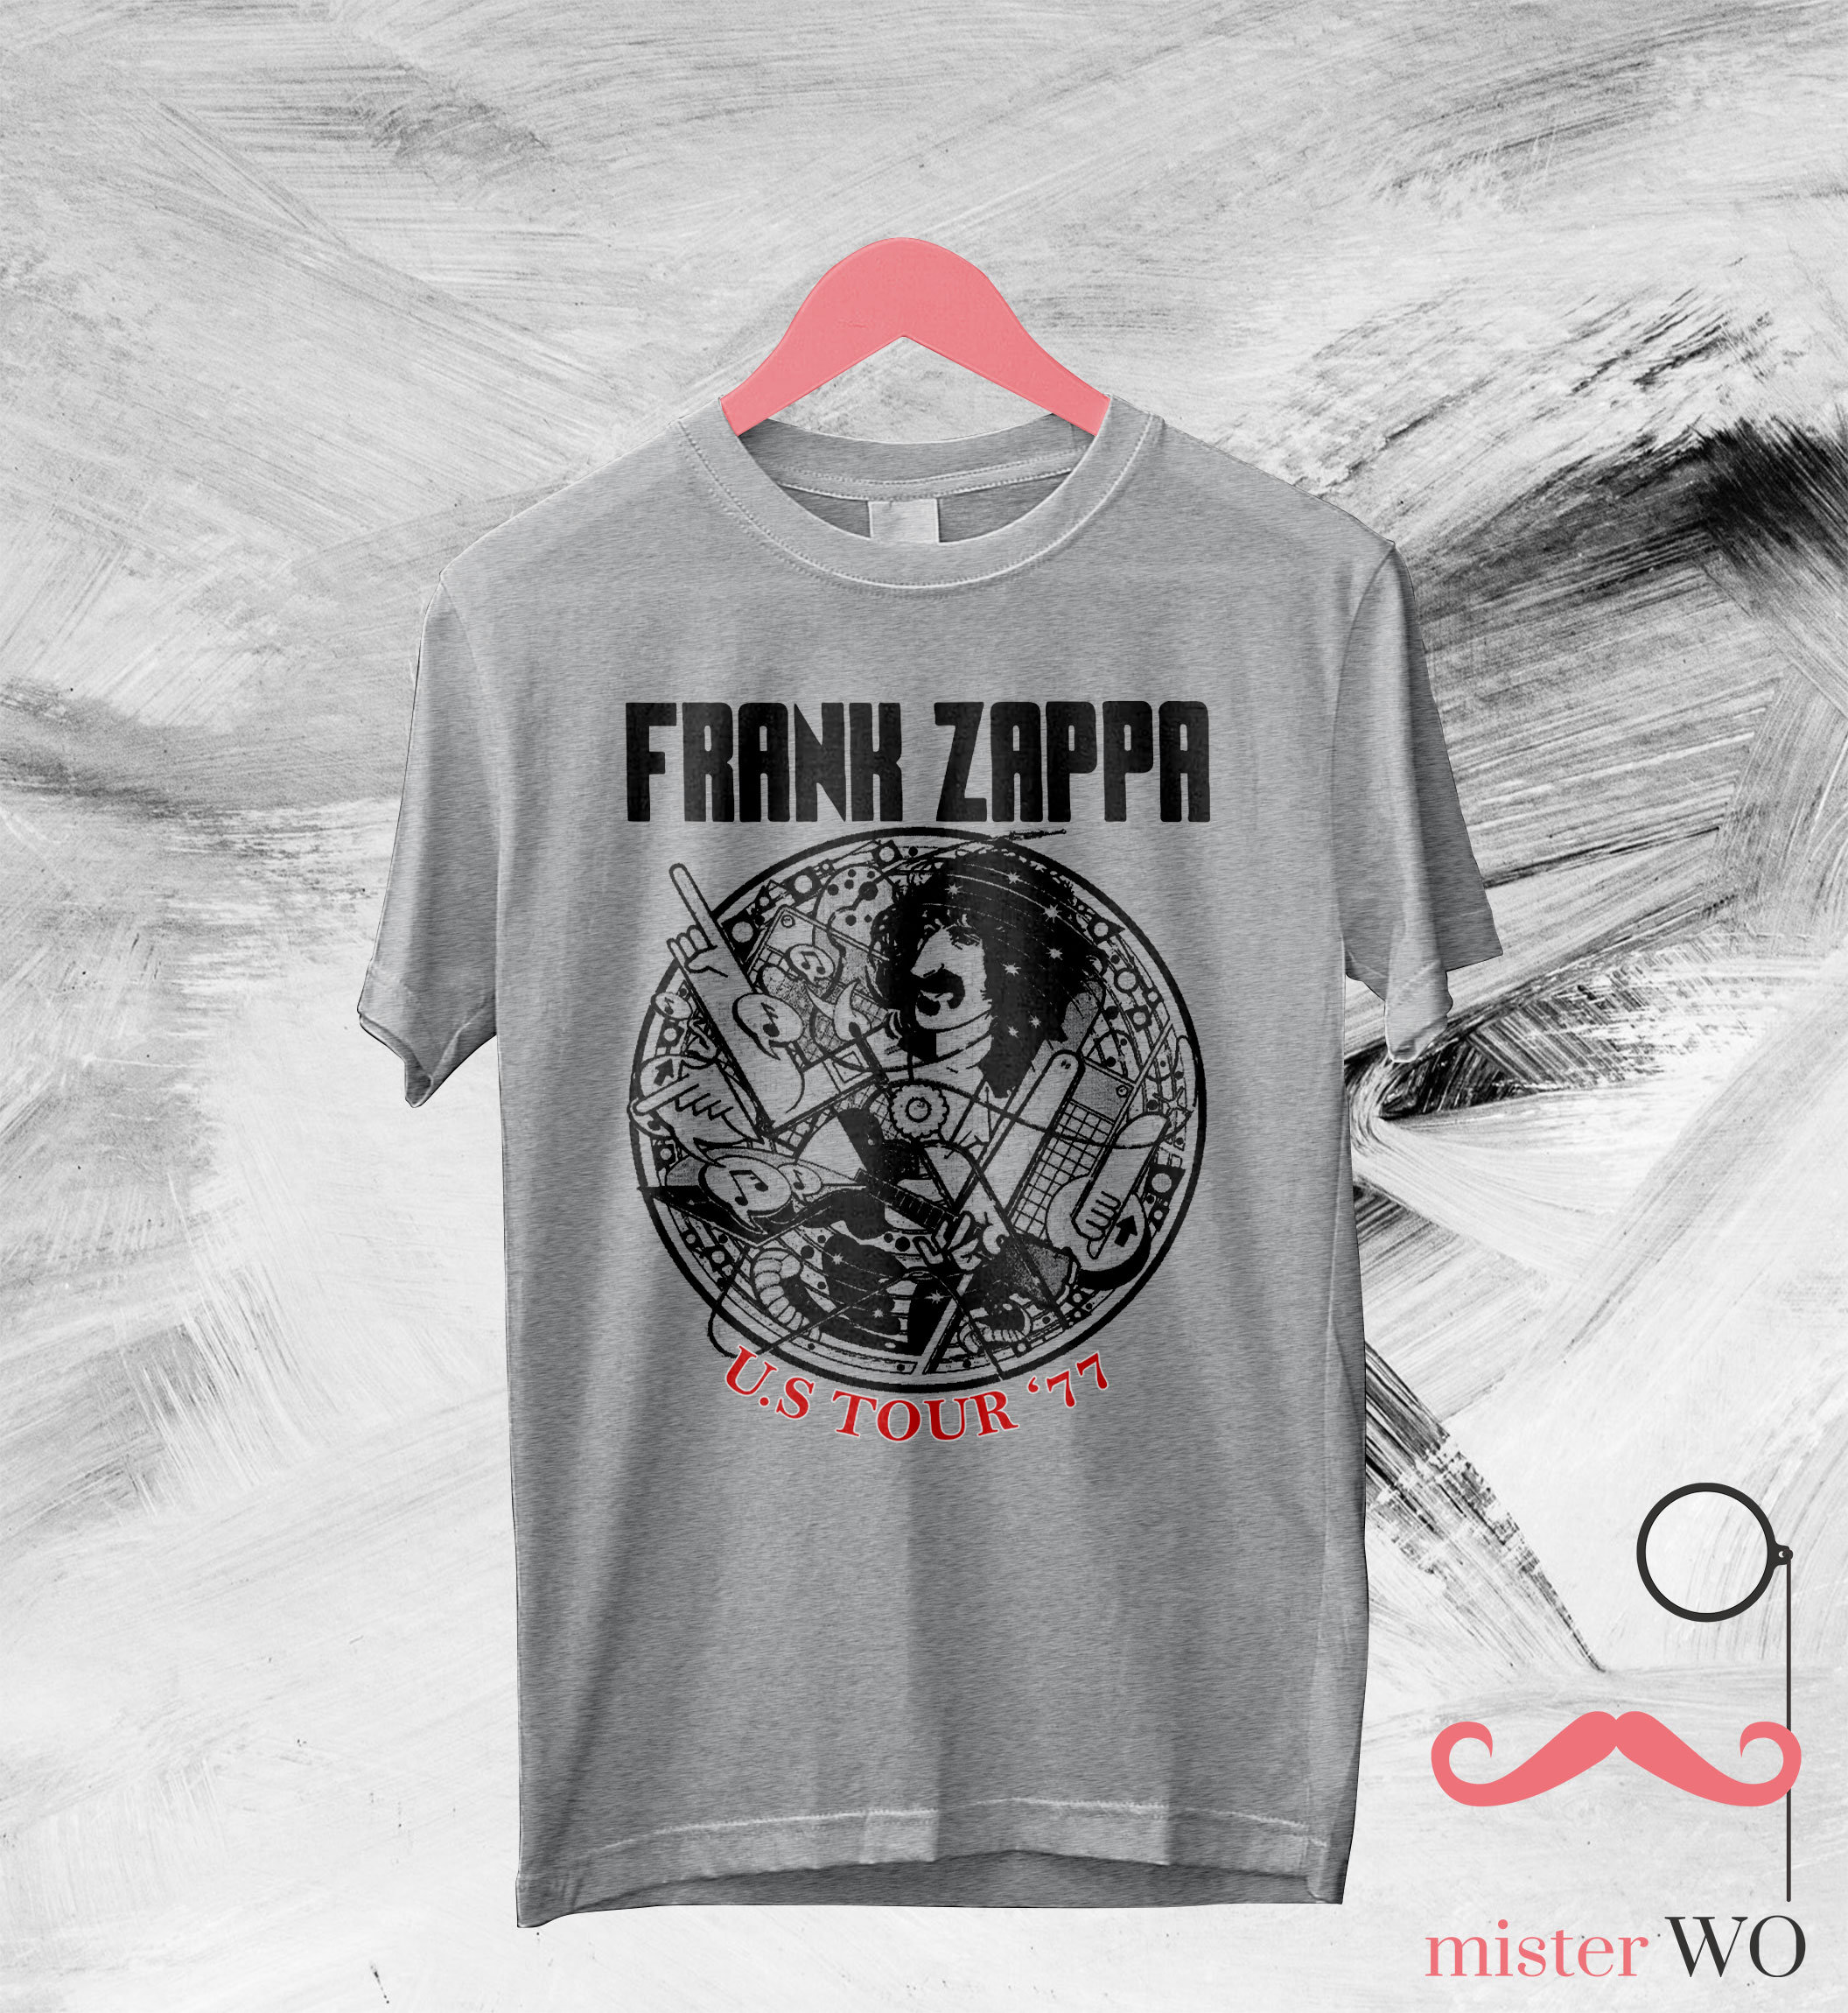 Frank Zappa US Tour '77 T-Shirt - Frank Zappa Shirt, Frank Zappa Tour, Music Shirt, Rock Music Shirt, Gift for Fan